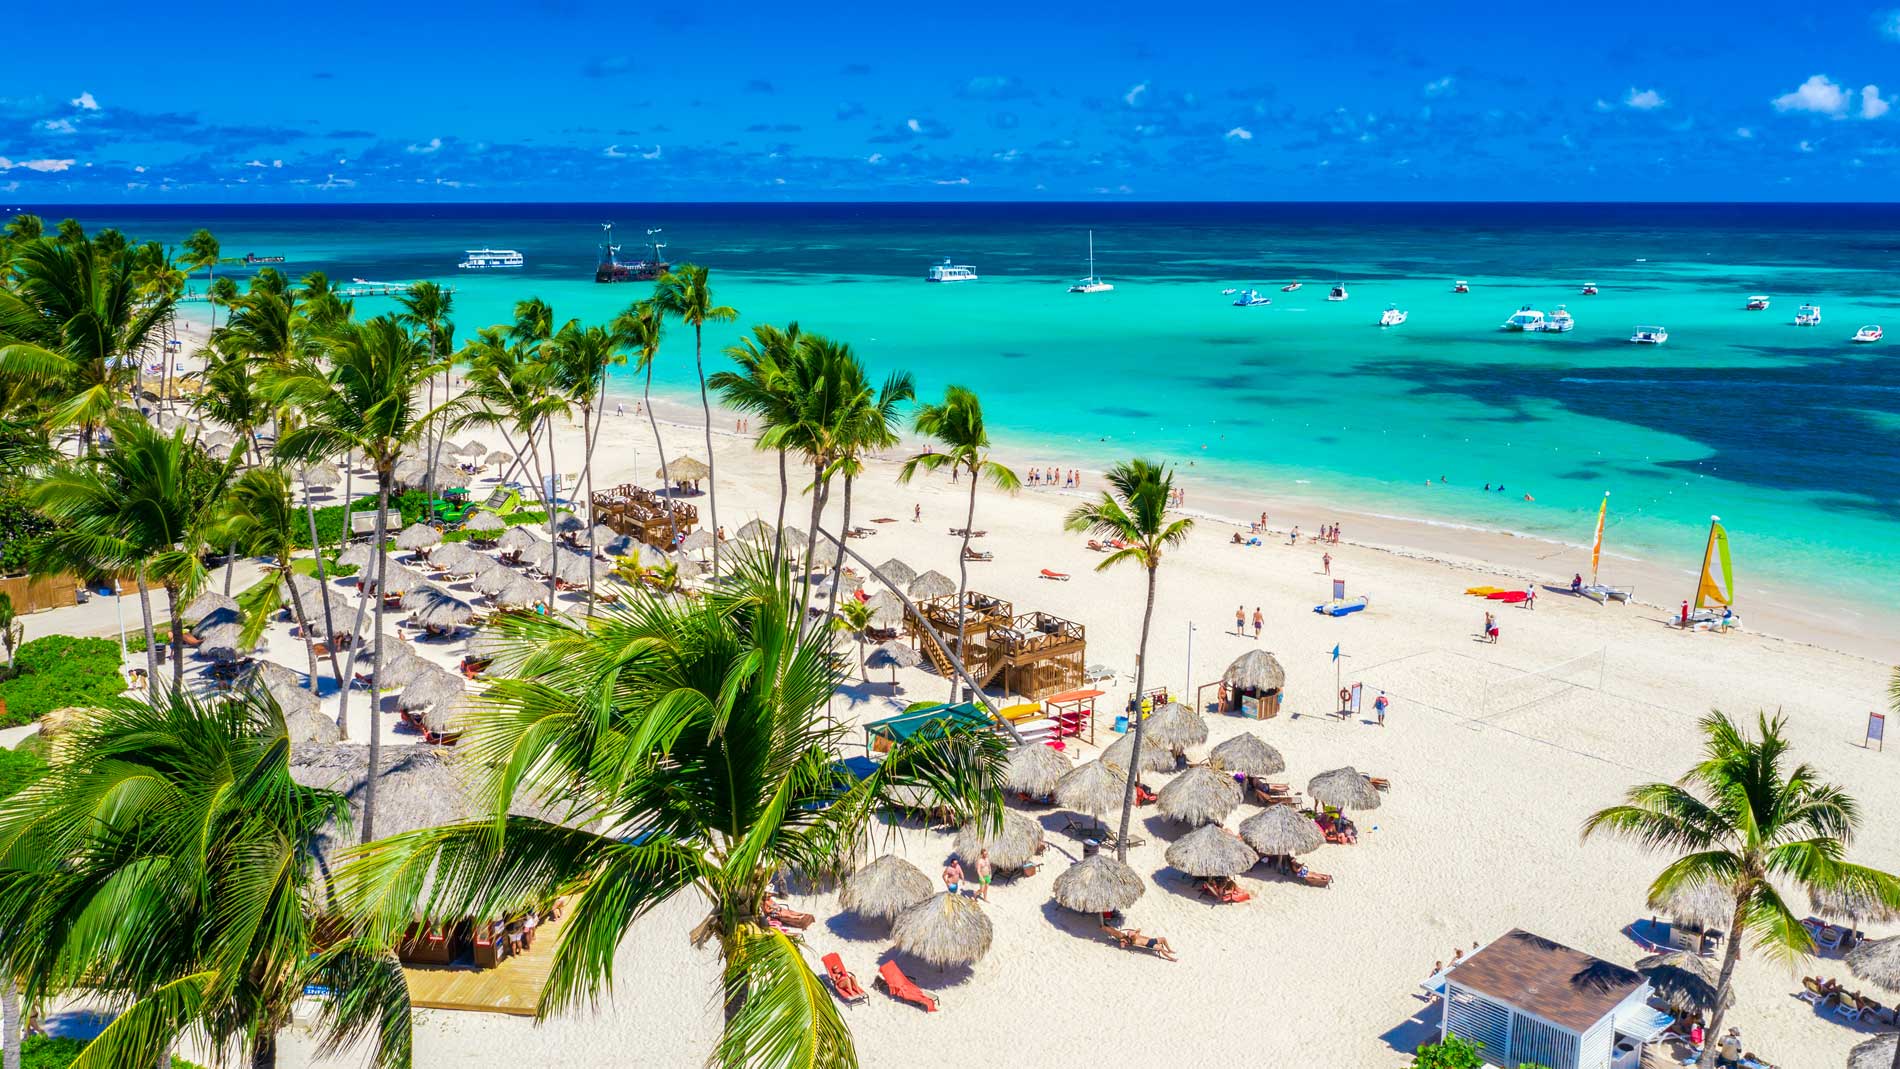 República Dominicana atrae más turistas que los tres países más grandes de Sudamérica